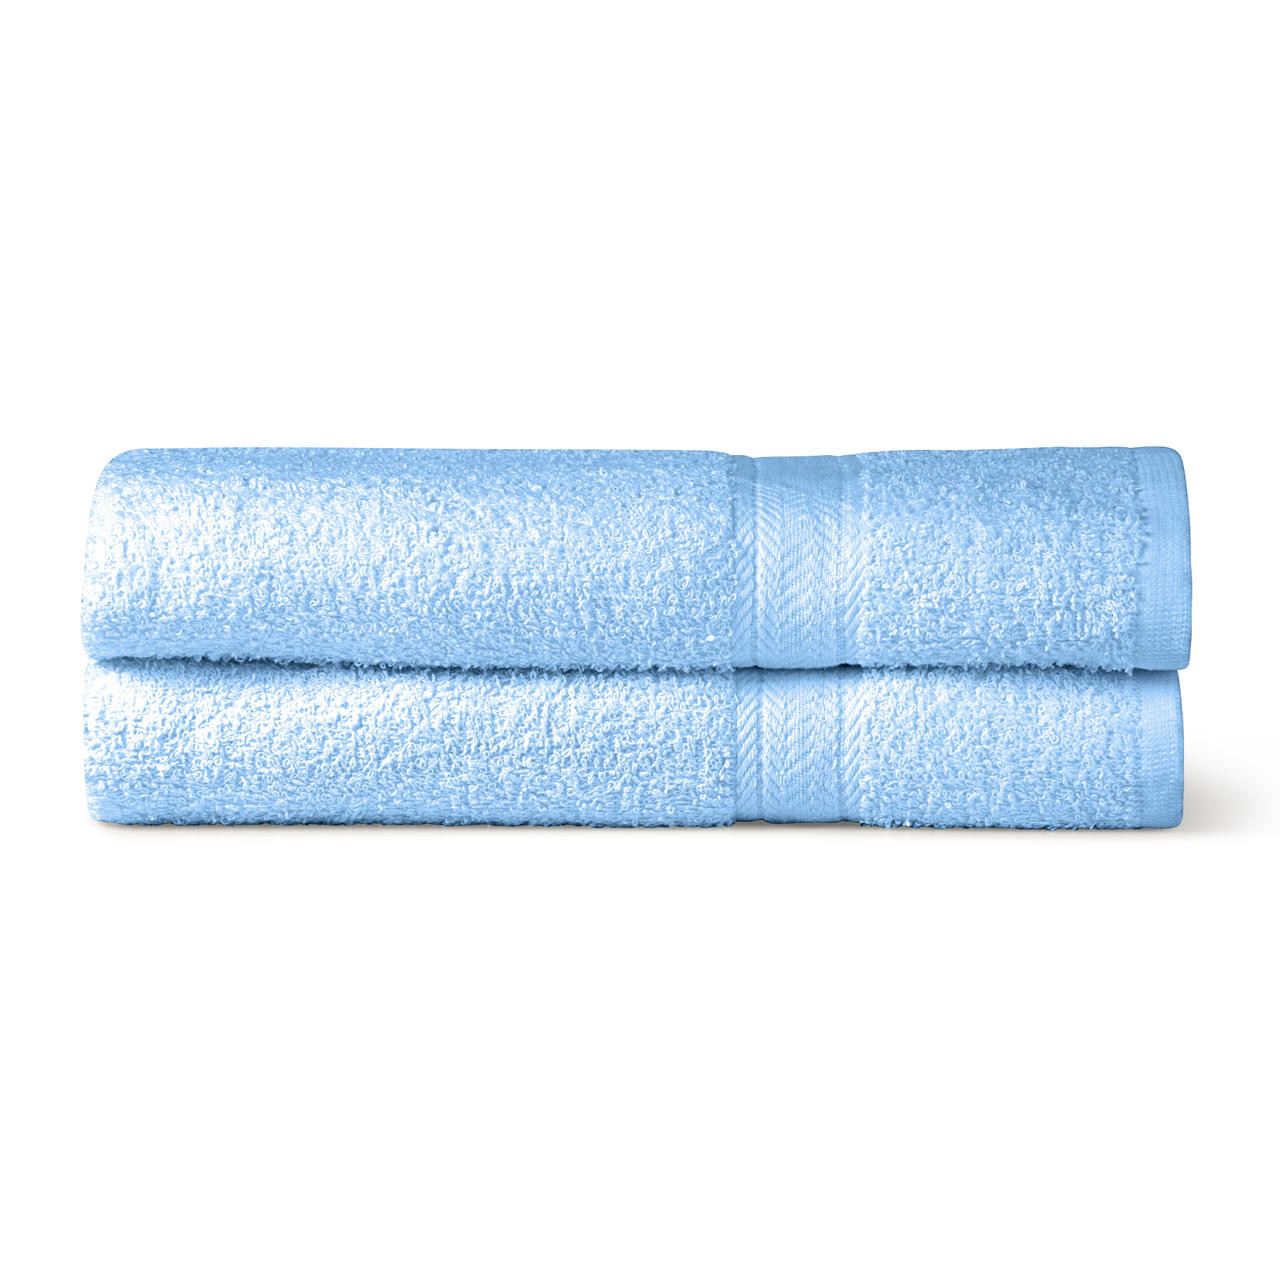 3 Piece Towels Bale Set Jumbo Bath Towels Sheets 100% Soft Cotton Bargain  Price